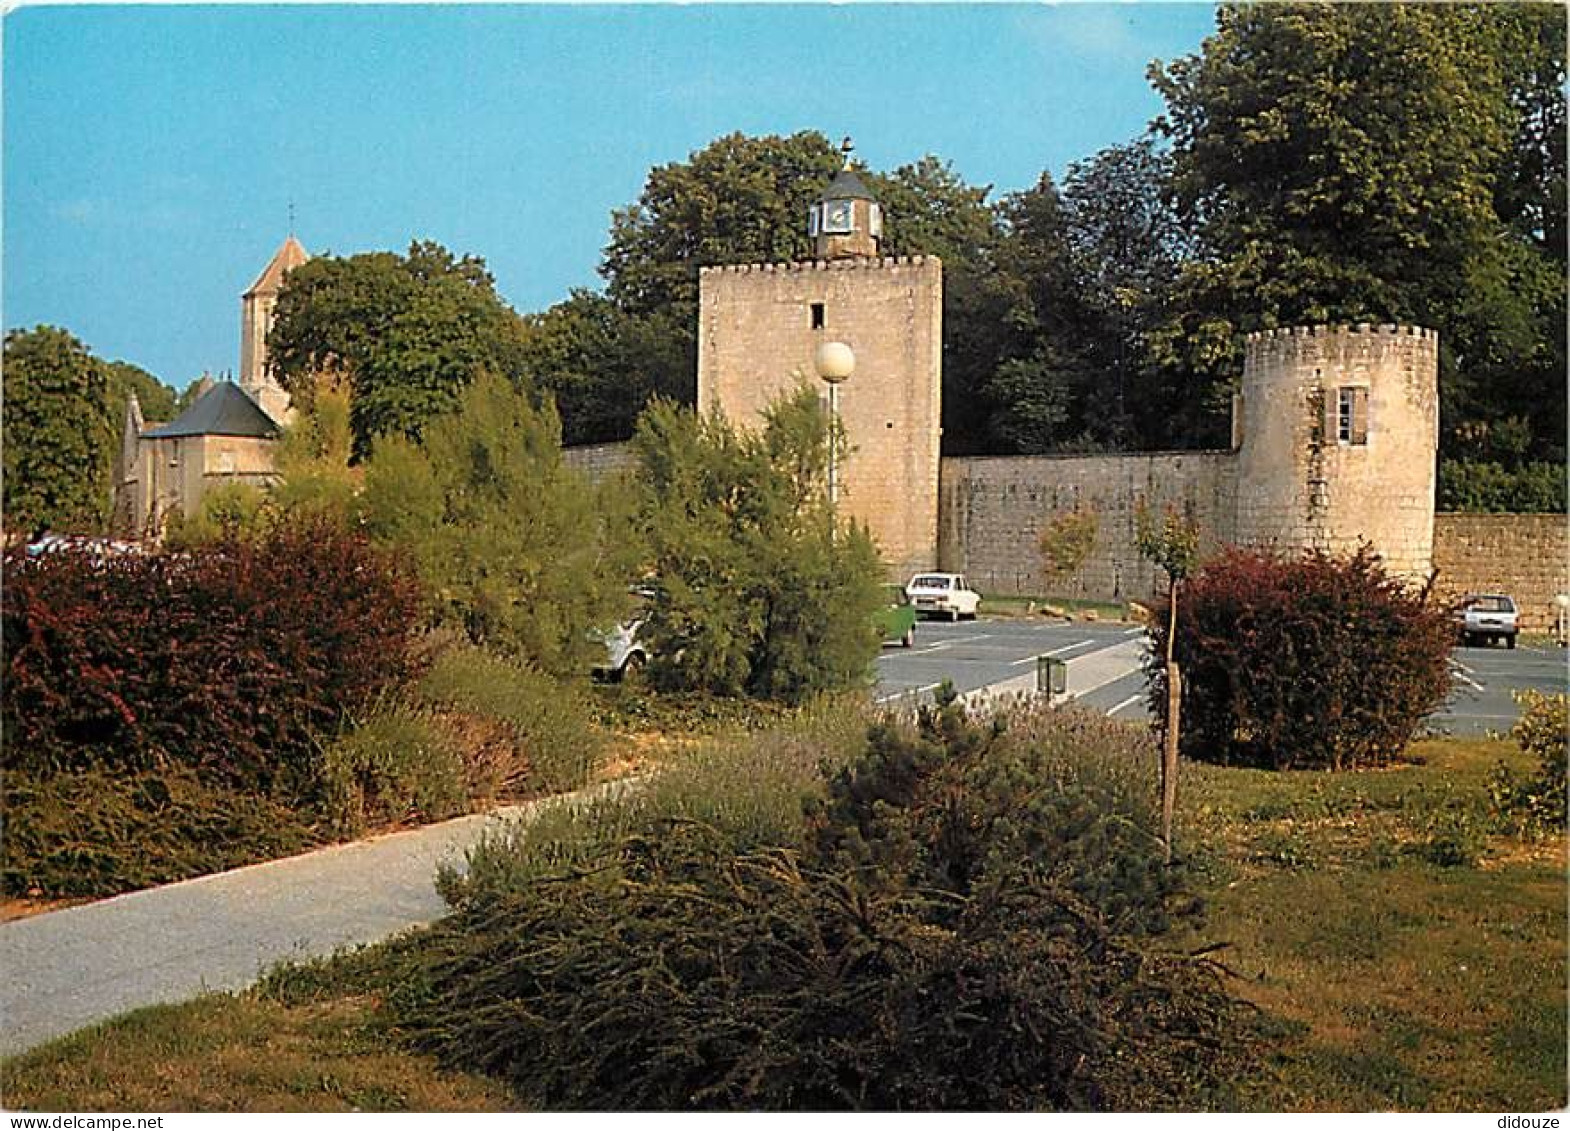 17 - Surgères - Mur D'enceinte Xle S. Remanié Au XVIe S. Du Château Primitif Des Comtes De Surgères - Automobiles - Cart - Surgères